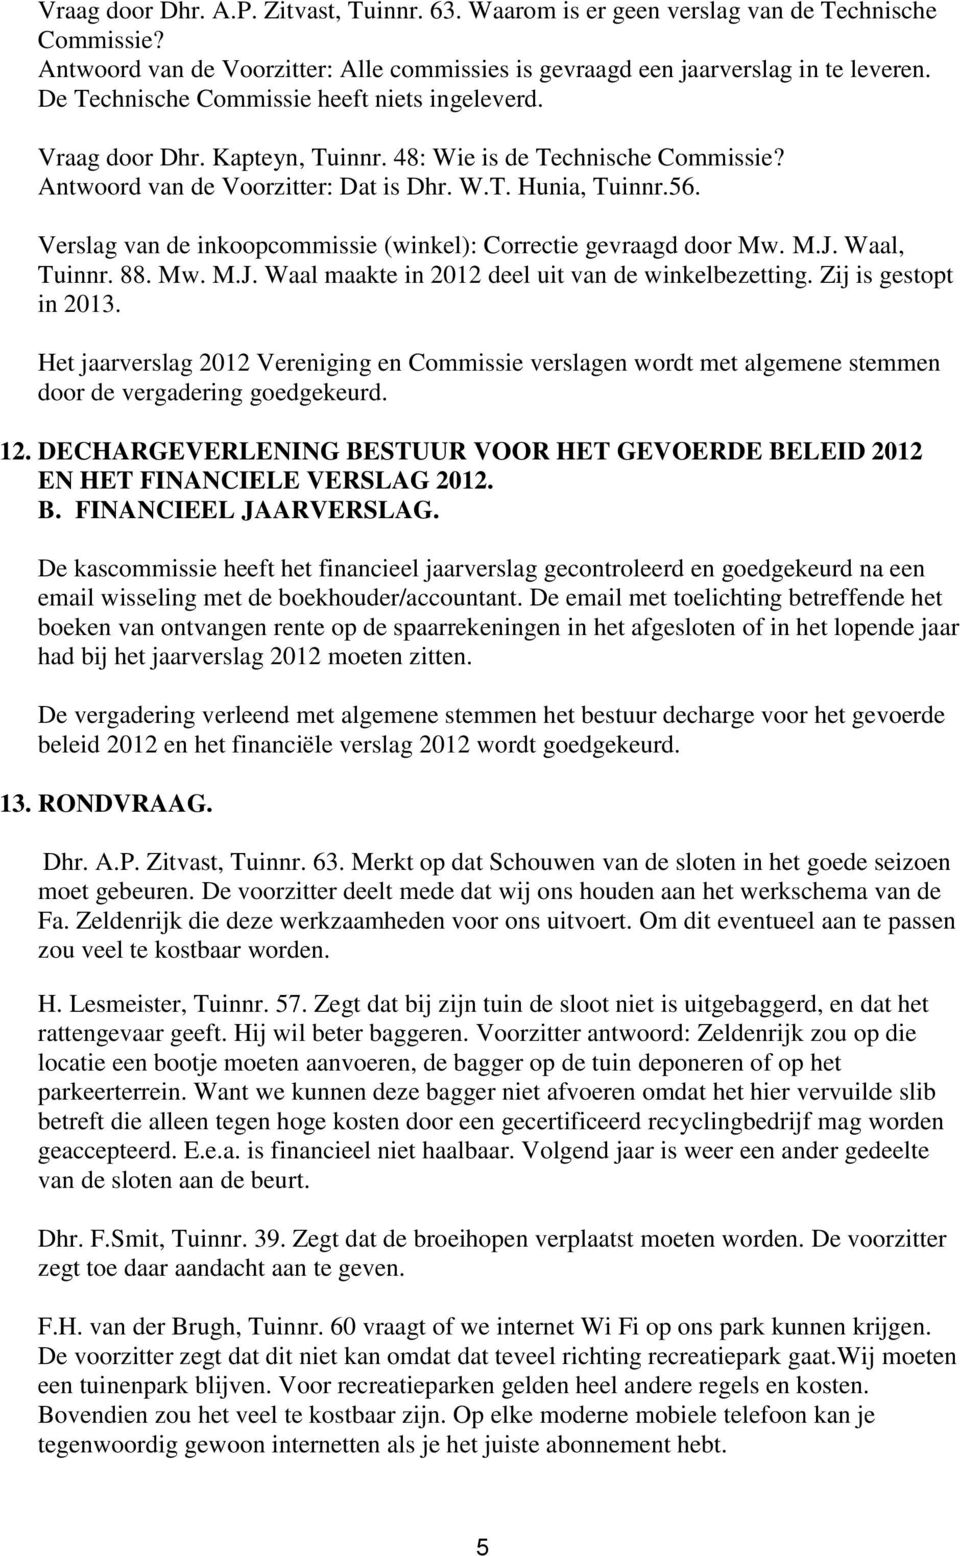 Verslag van de inkoopcommissie (winkel): Correctie gevraagd door Mw. M.J. Waal, Tuinnr. 88. Mw. M.J. Waal maakte in 2012 deel uit van de winkelbezetting. Zij is gestopt in 2013.